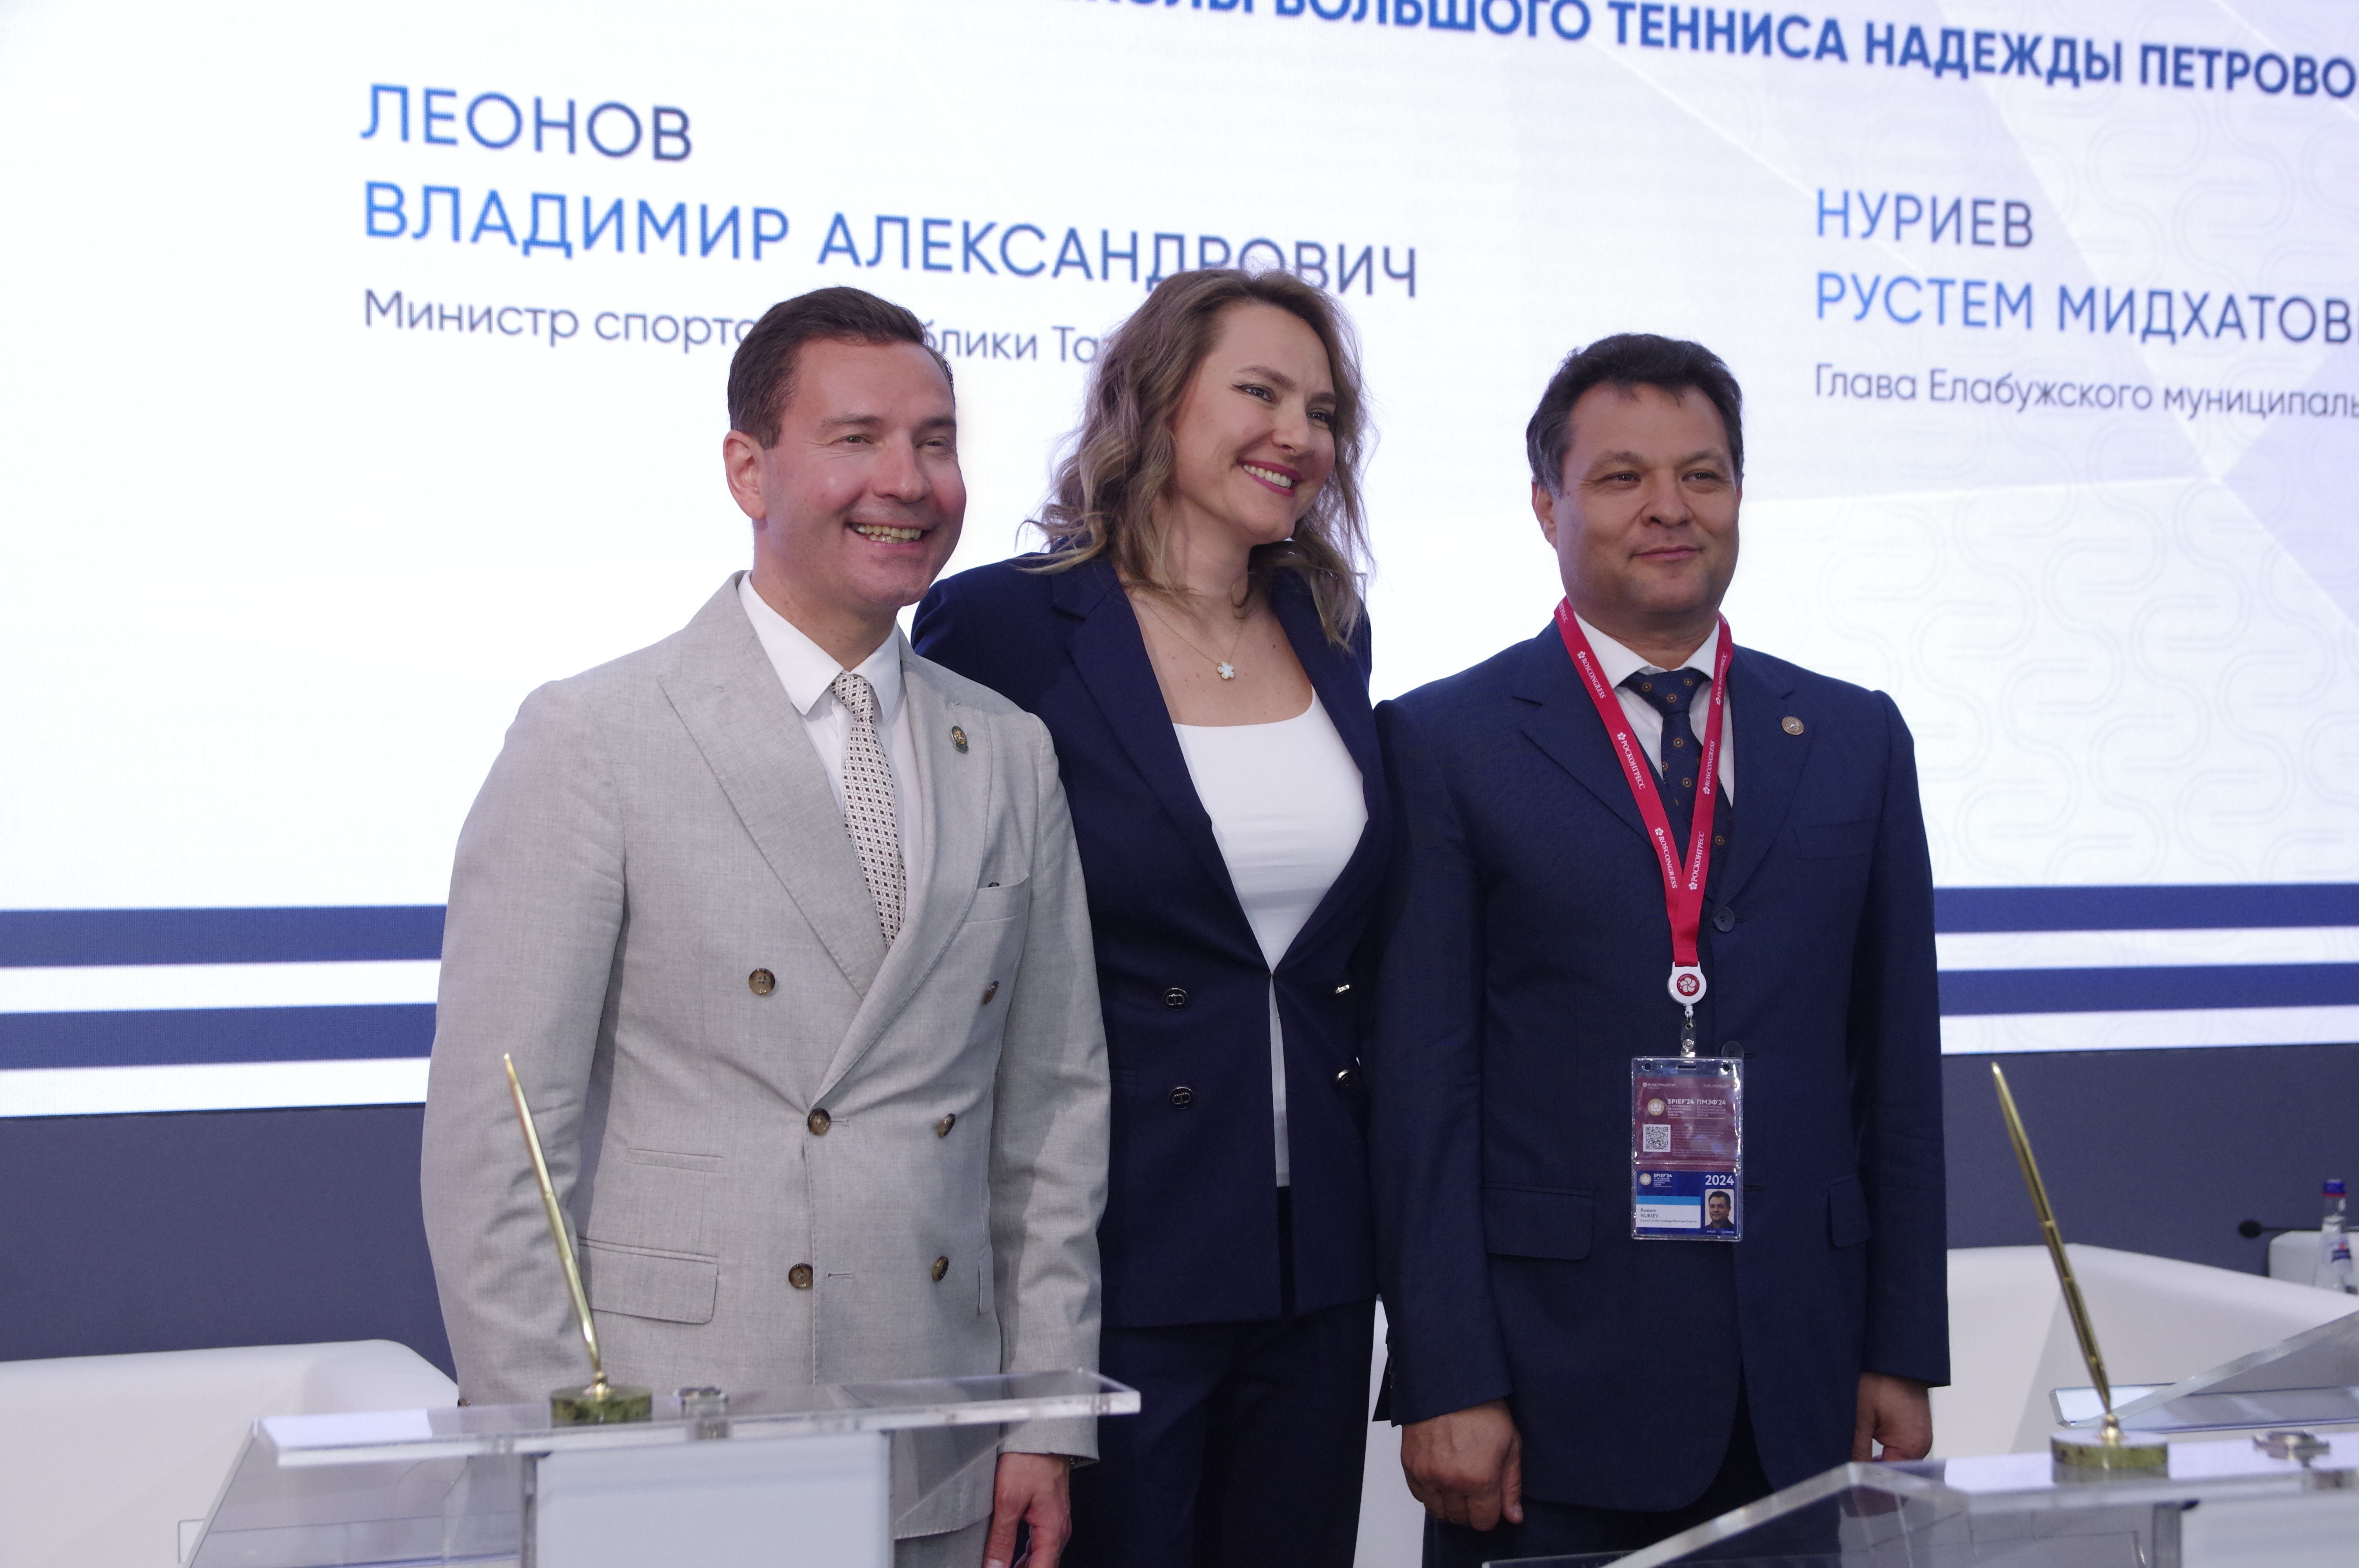 Татарстан на ПМЭФ подписал соглашение о развитии тенниса с Надеждой Петровой